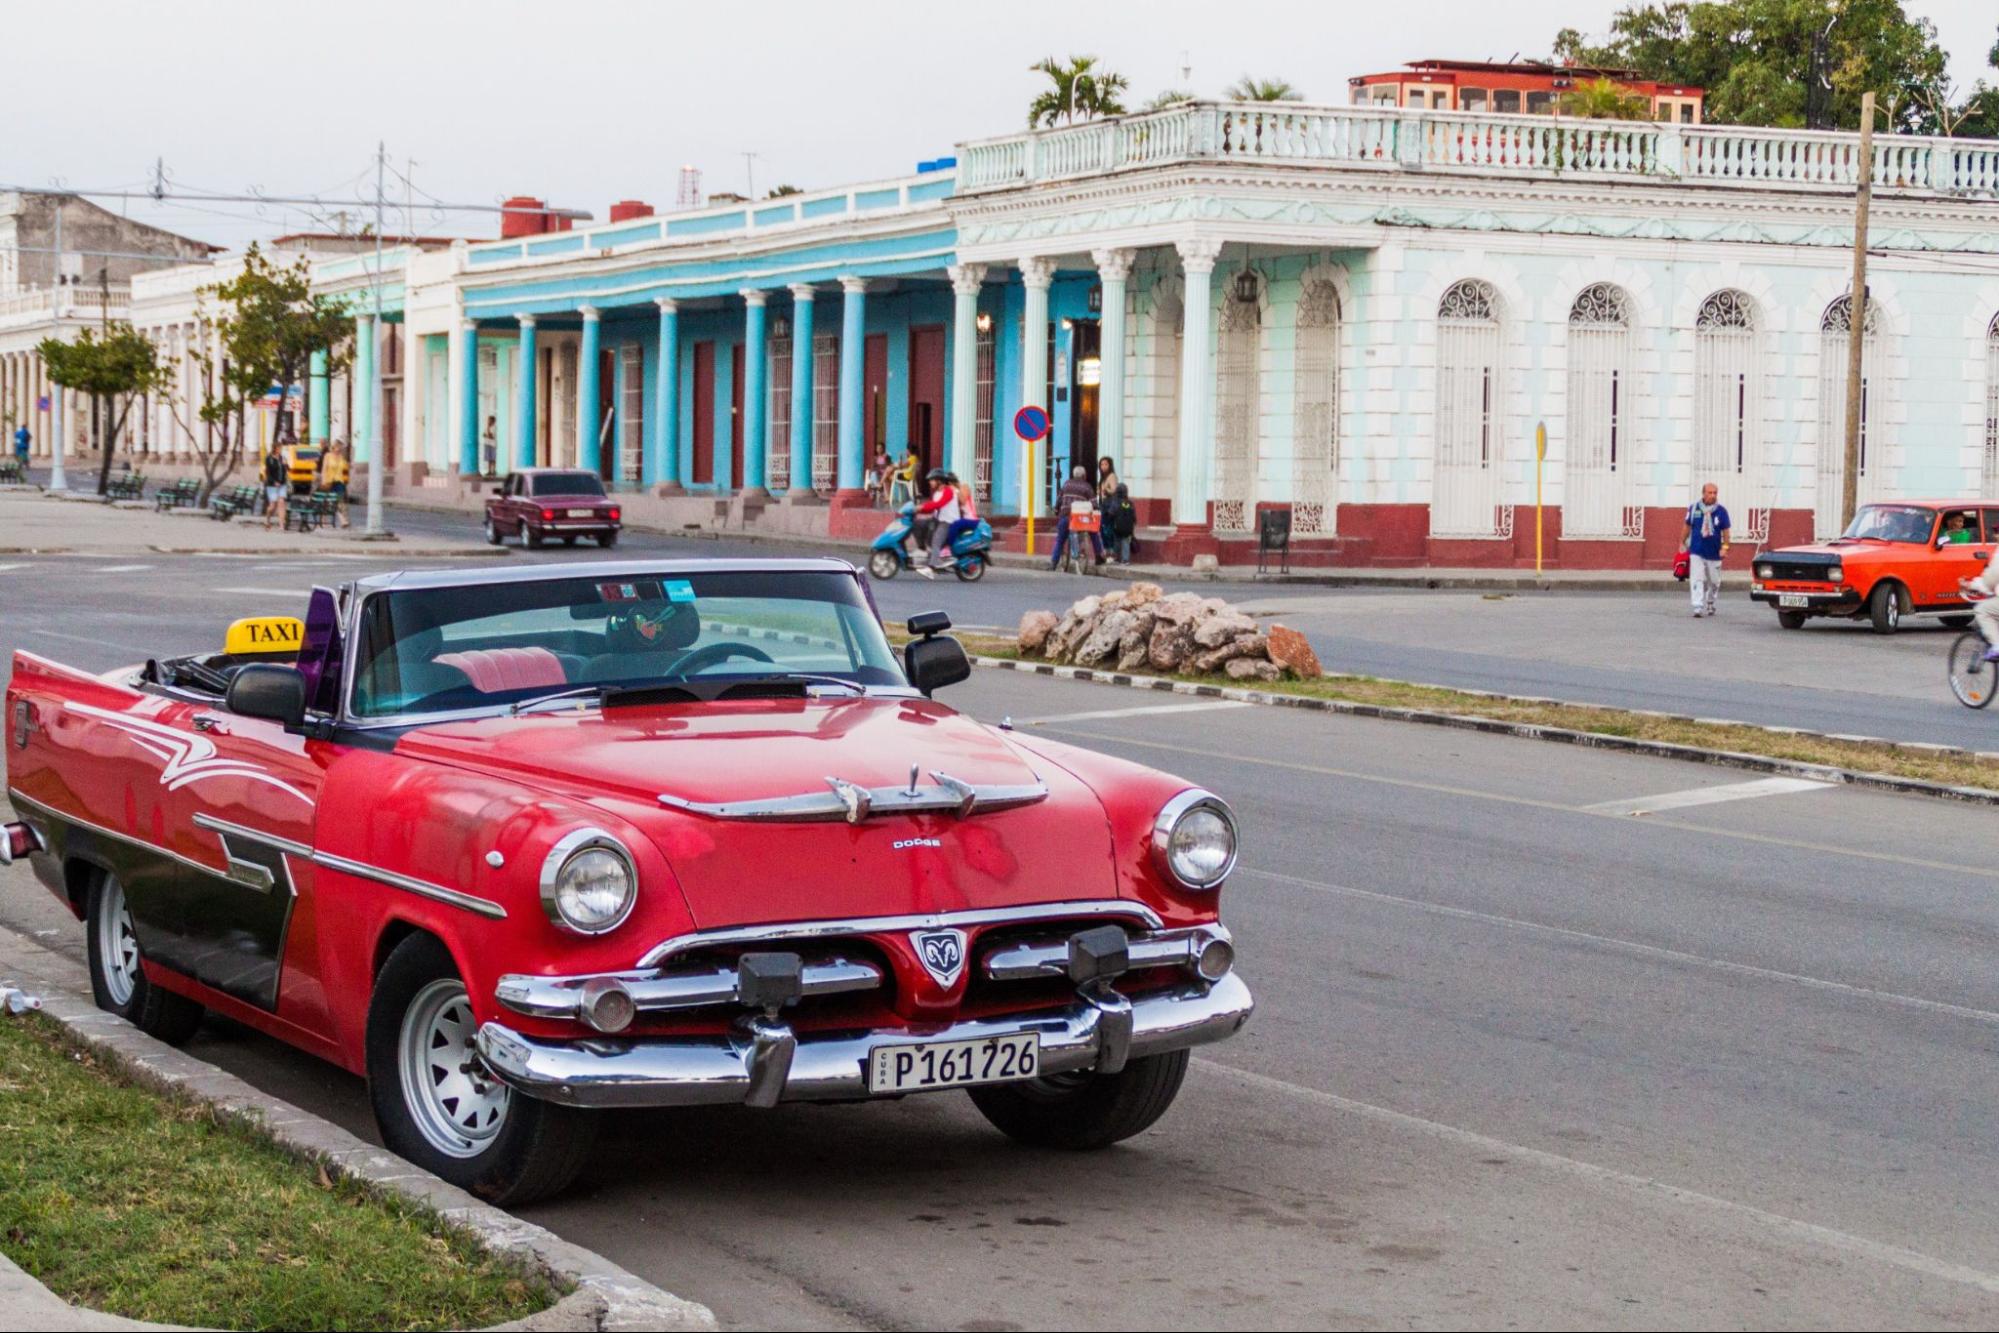 Vintage Dodge car at Paseo del Prado street in Cienfuegos, Cuba